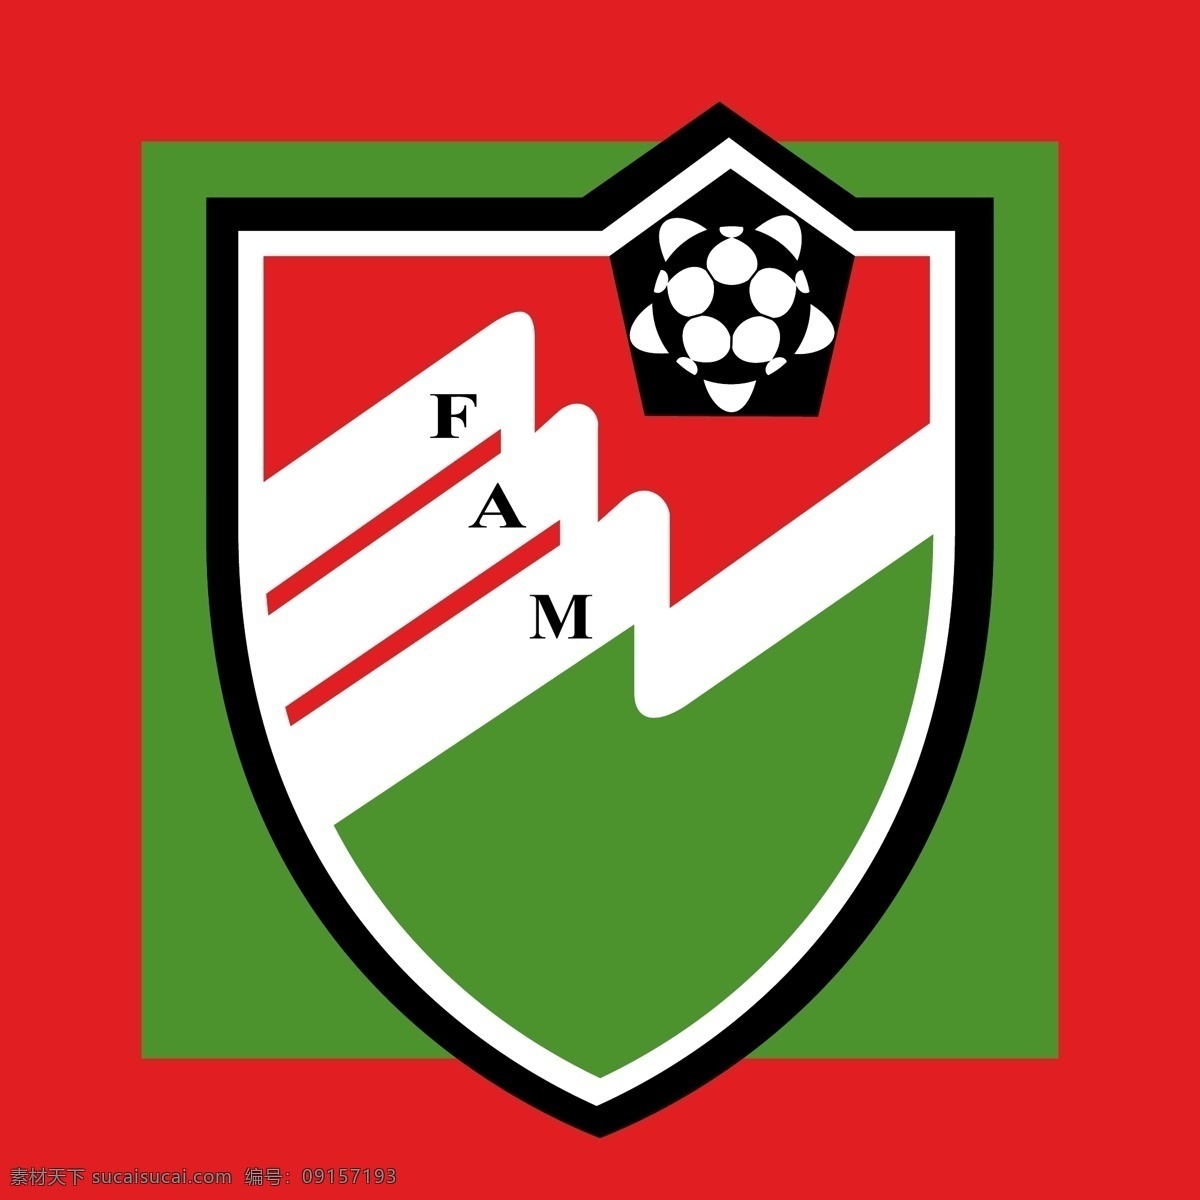 马尔代夫队 标志 logo设计 马尔代夫 世界杯 运动 中国 足球 足球标志 国家队 亚洲杯 亚冠 世预赛 小组赛 矢量图